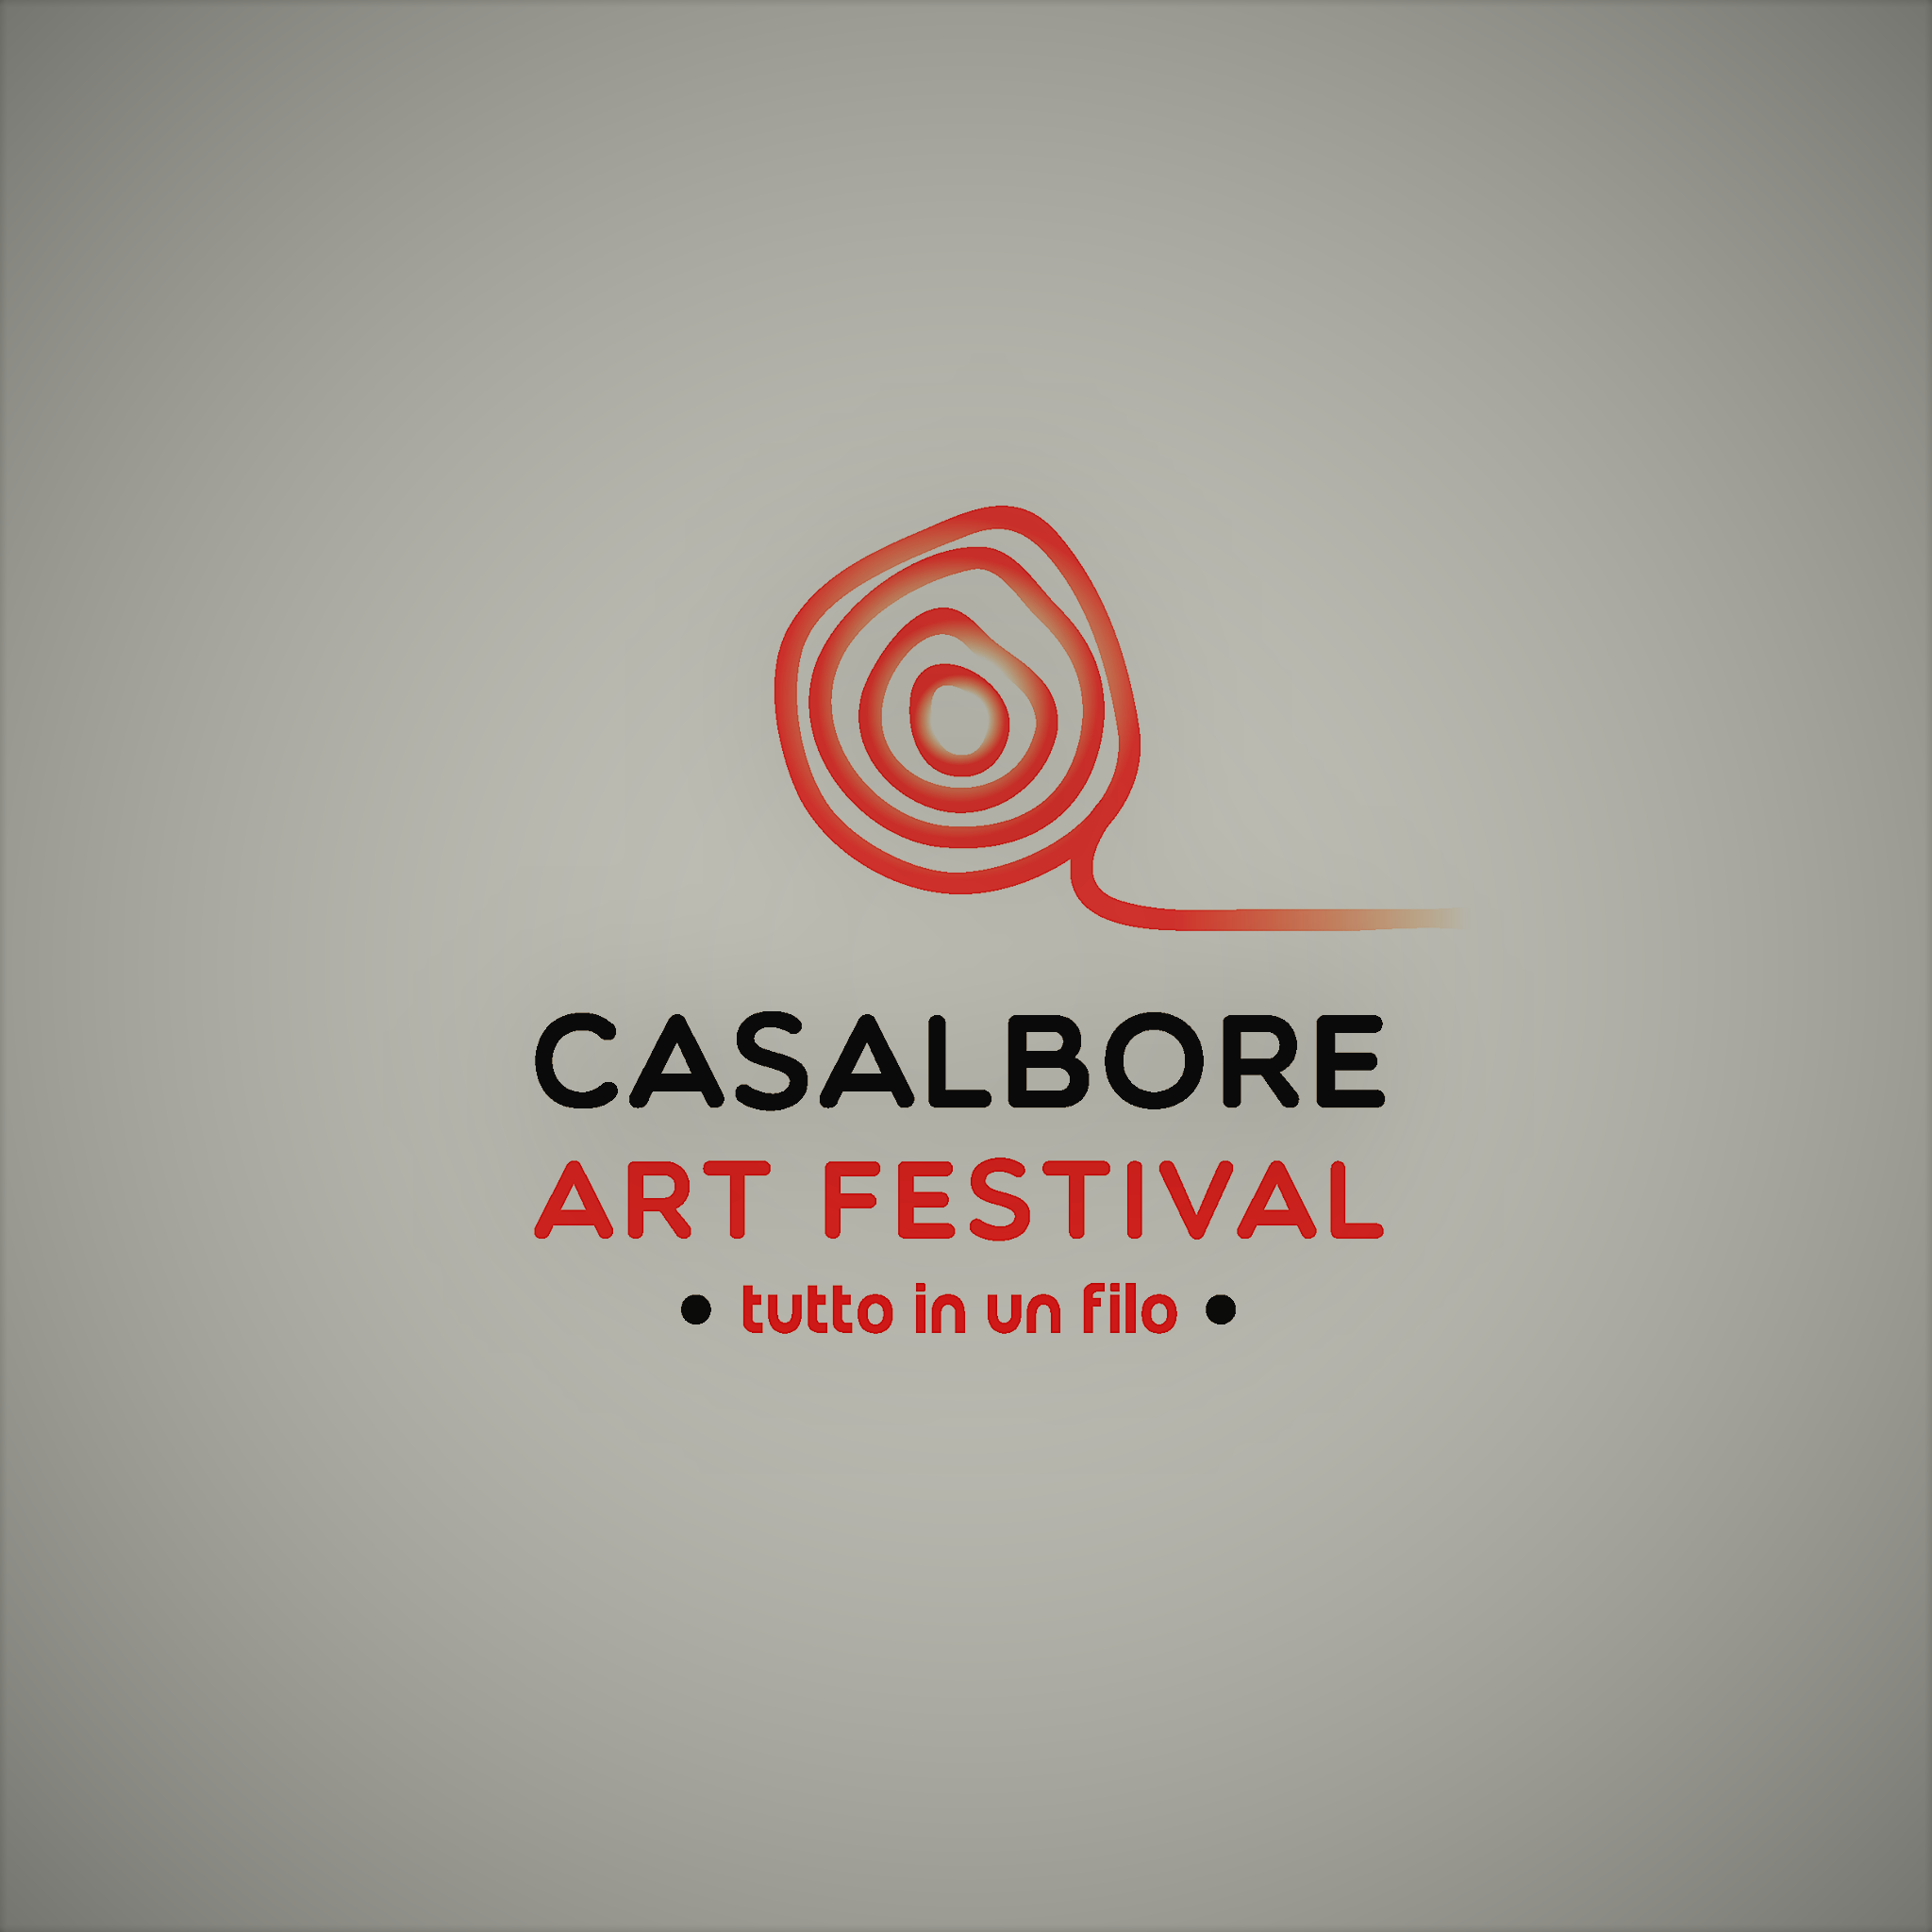 Casalbore Art Festival, aperte le iscrizioni al concorso di arti figurative